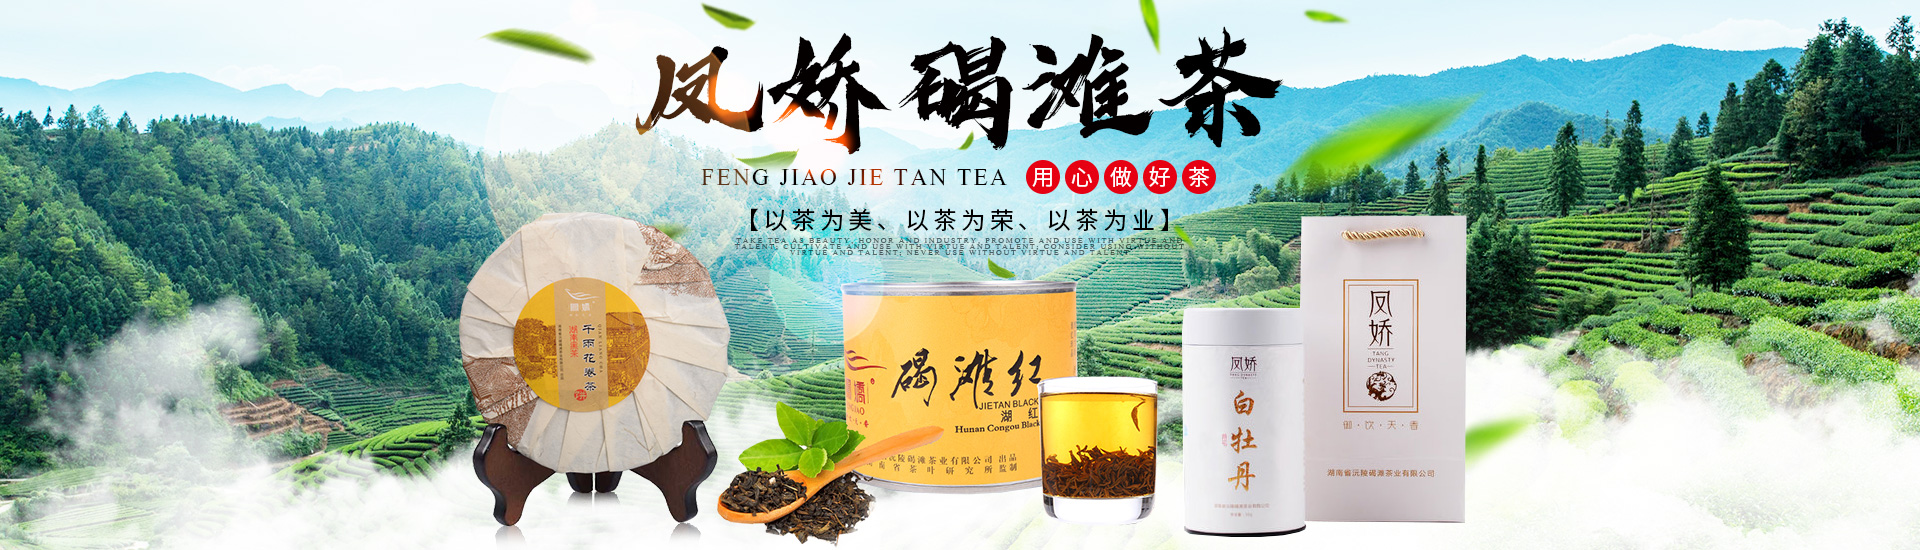 湖南省沅陵碣滩茶业有限公司_沅陵碣滩茶|茶叶加工销售|茶文化传播